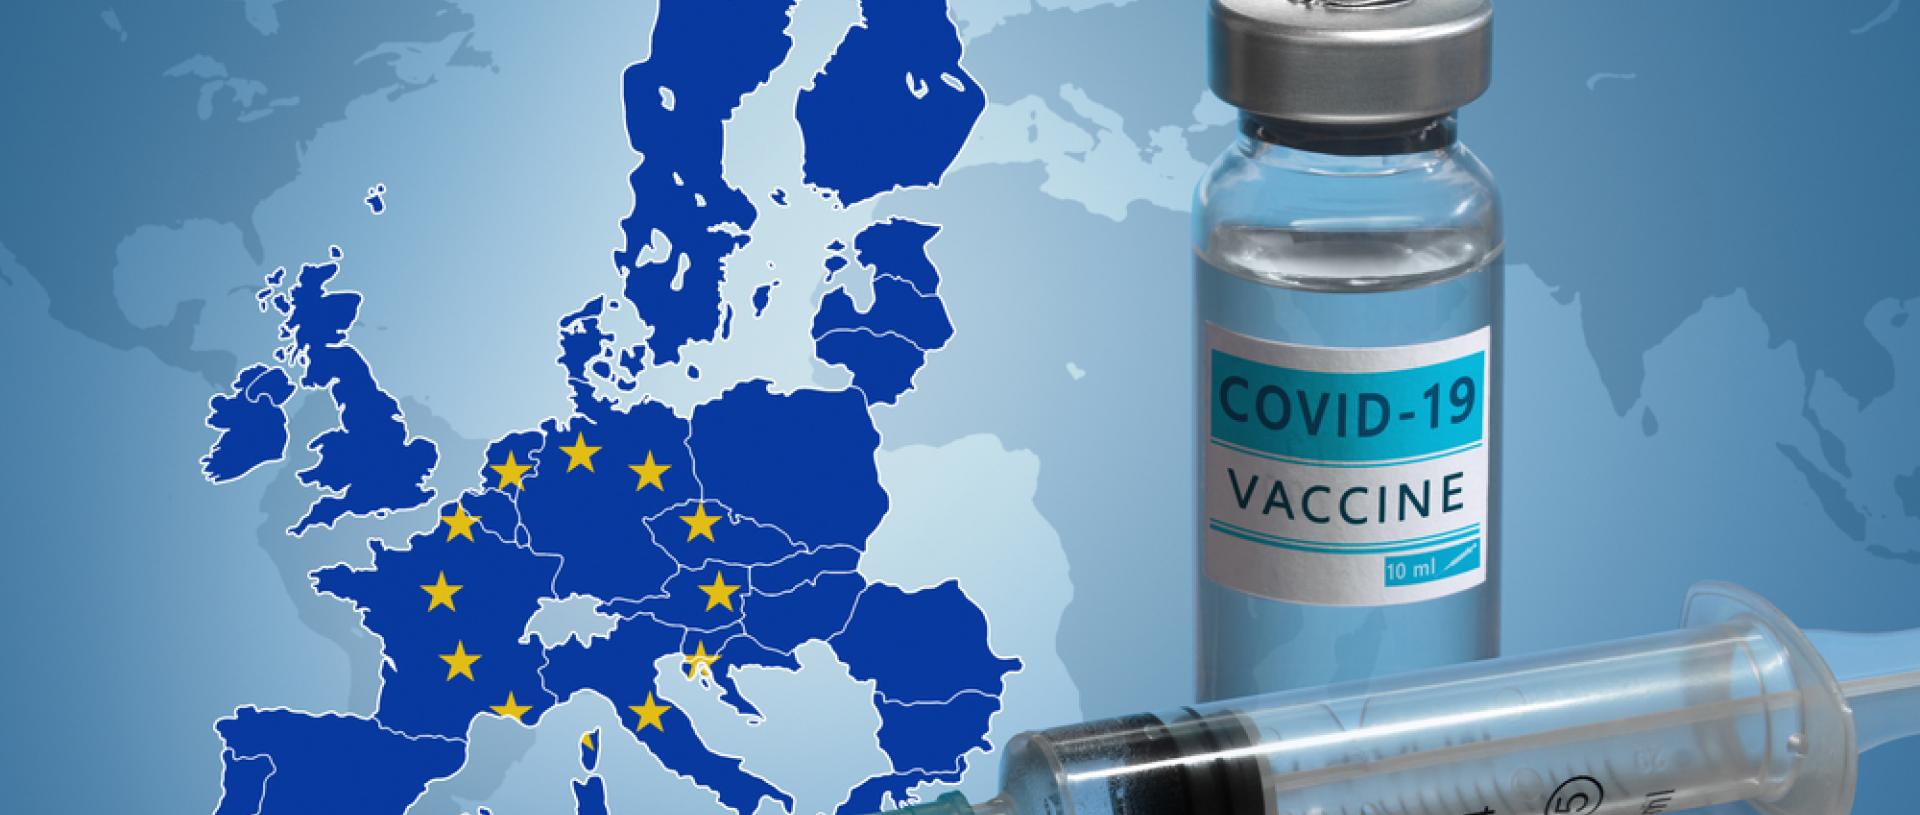 Εμβόλια για κορονοϊό: Η ΕΕ θέλει την παγκόσμια πρωτοκαθεδρία μέχρι το τέλος του 2021